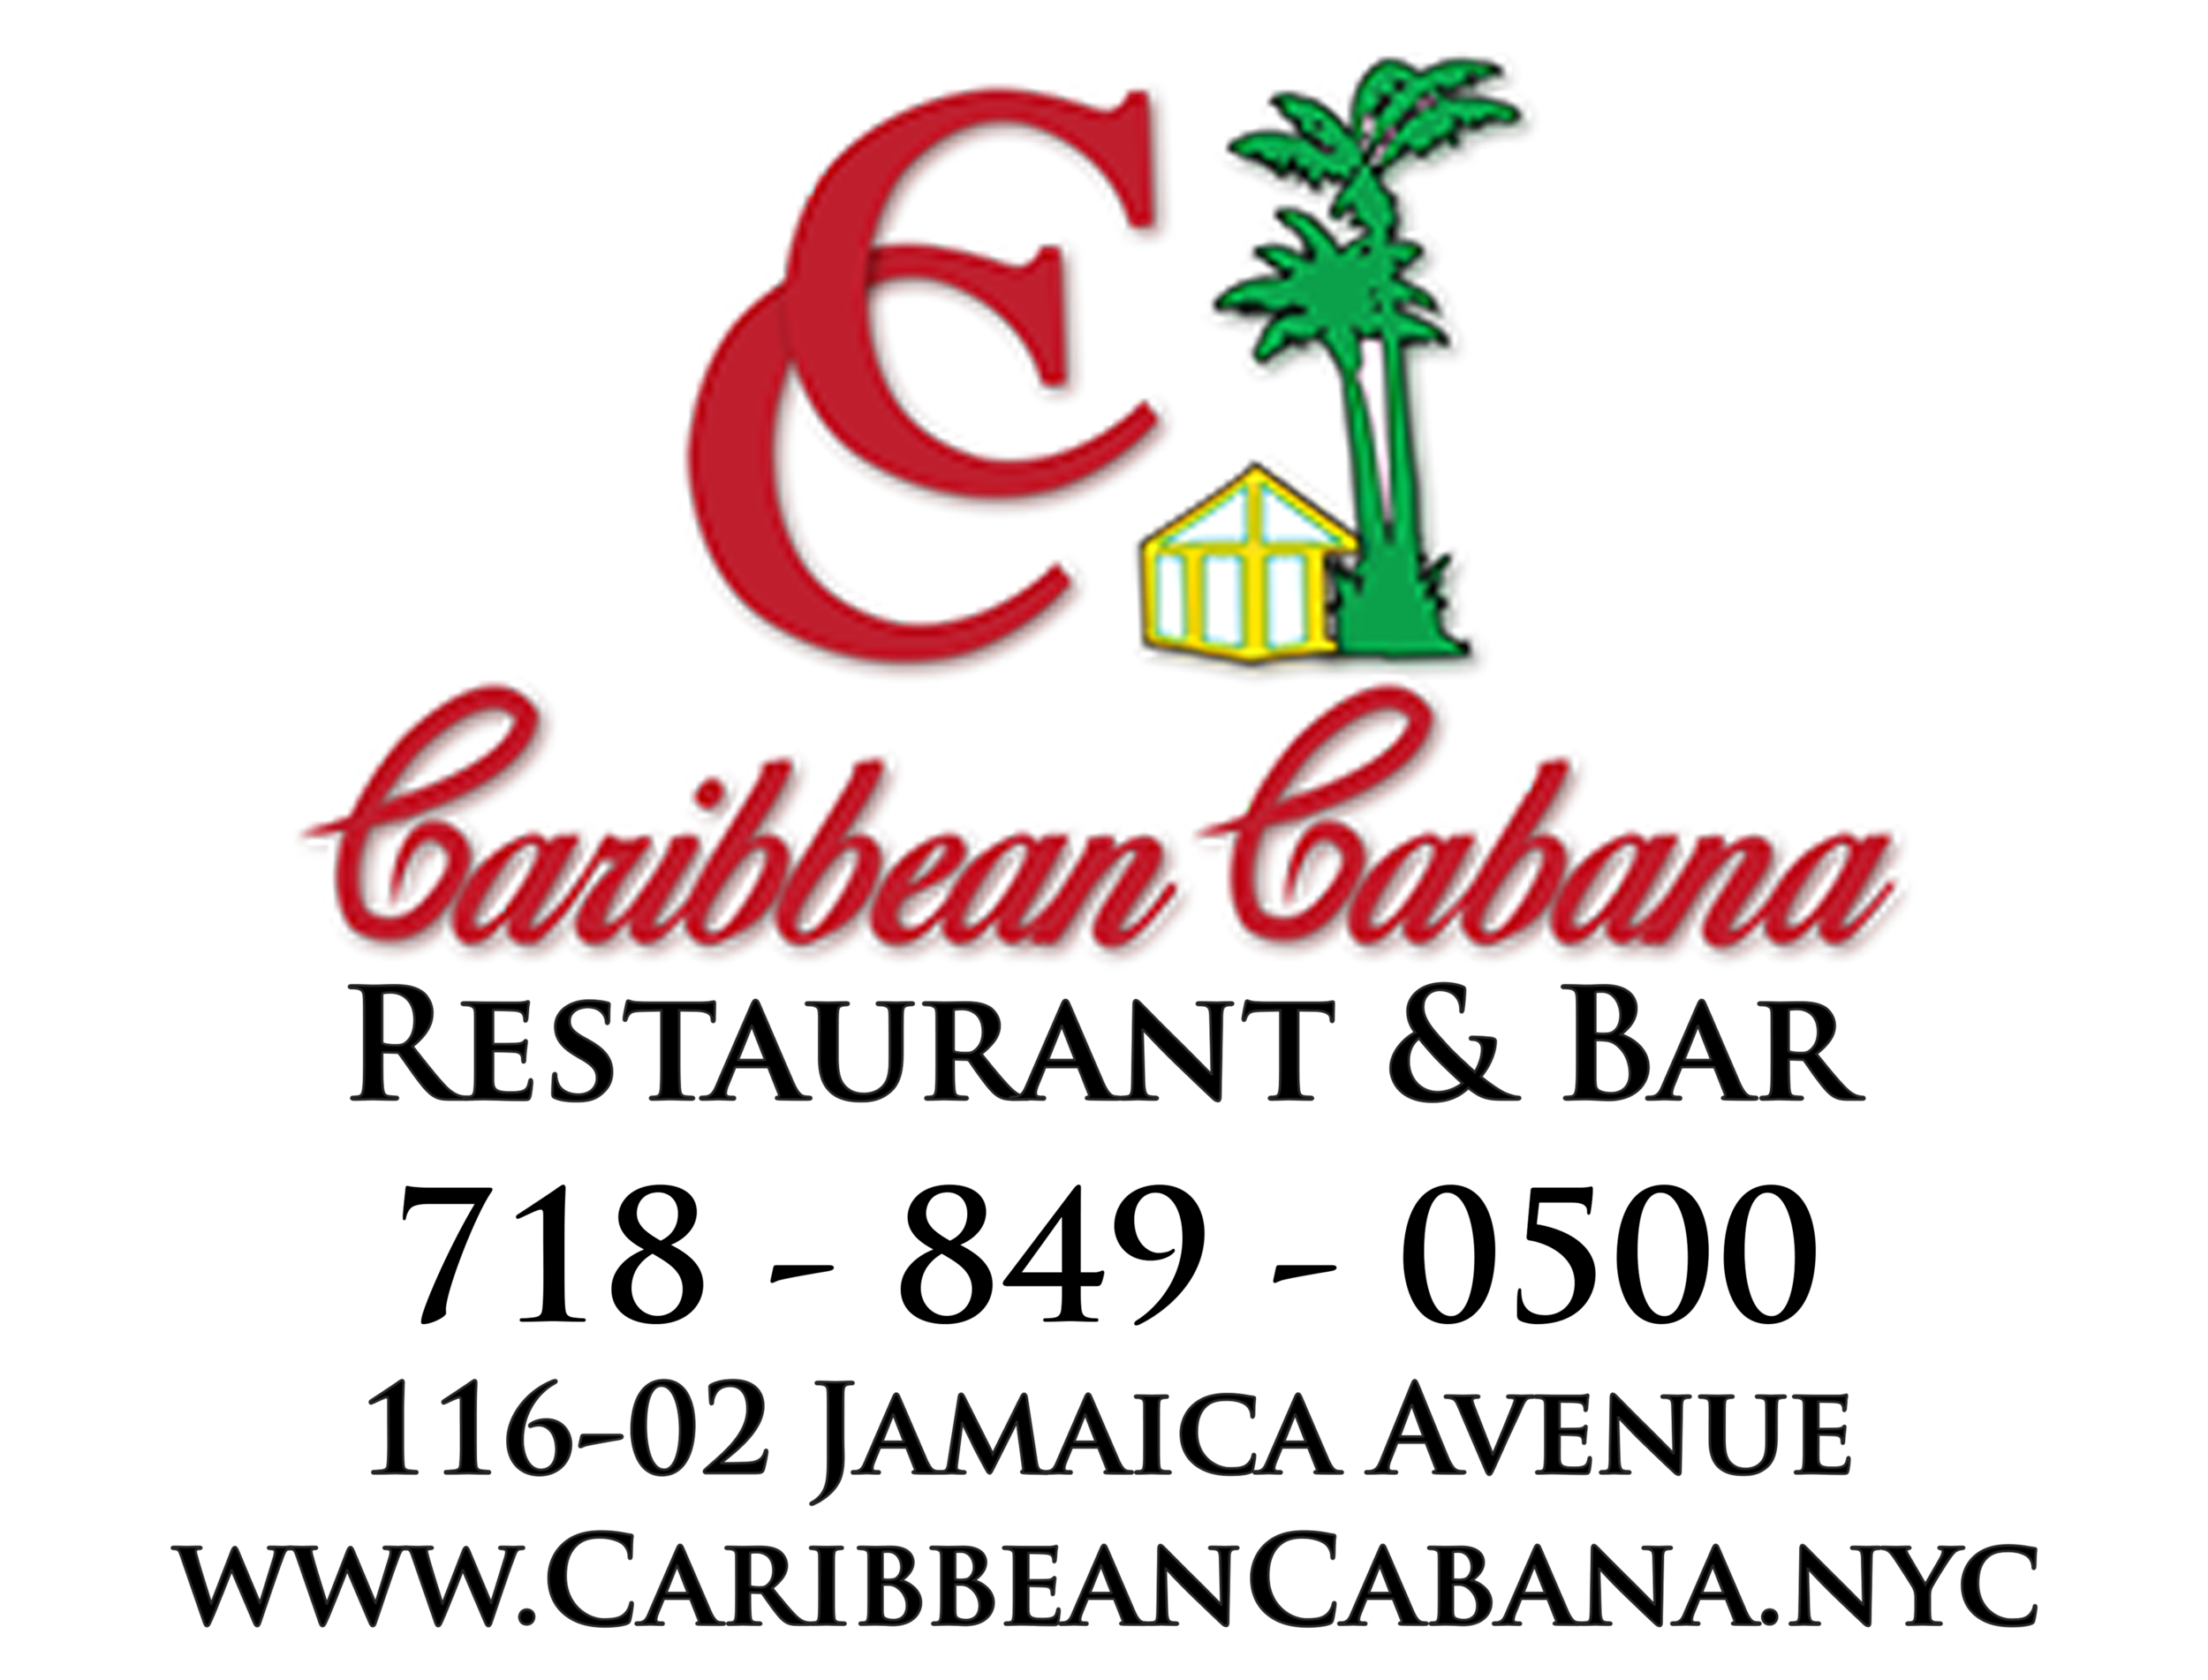 Caribbean Cabana_Logo.png